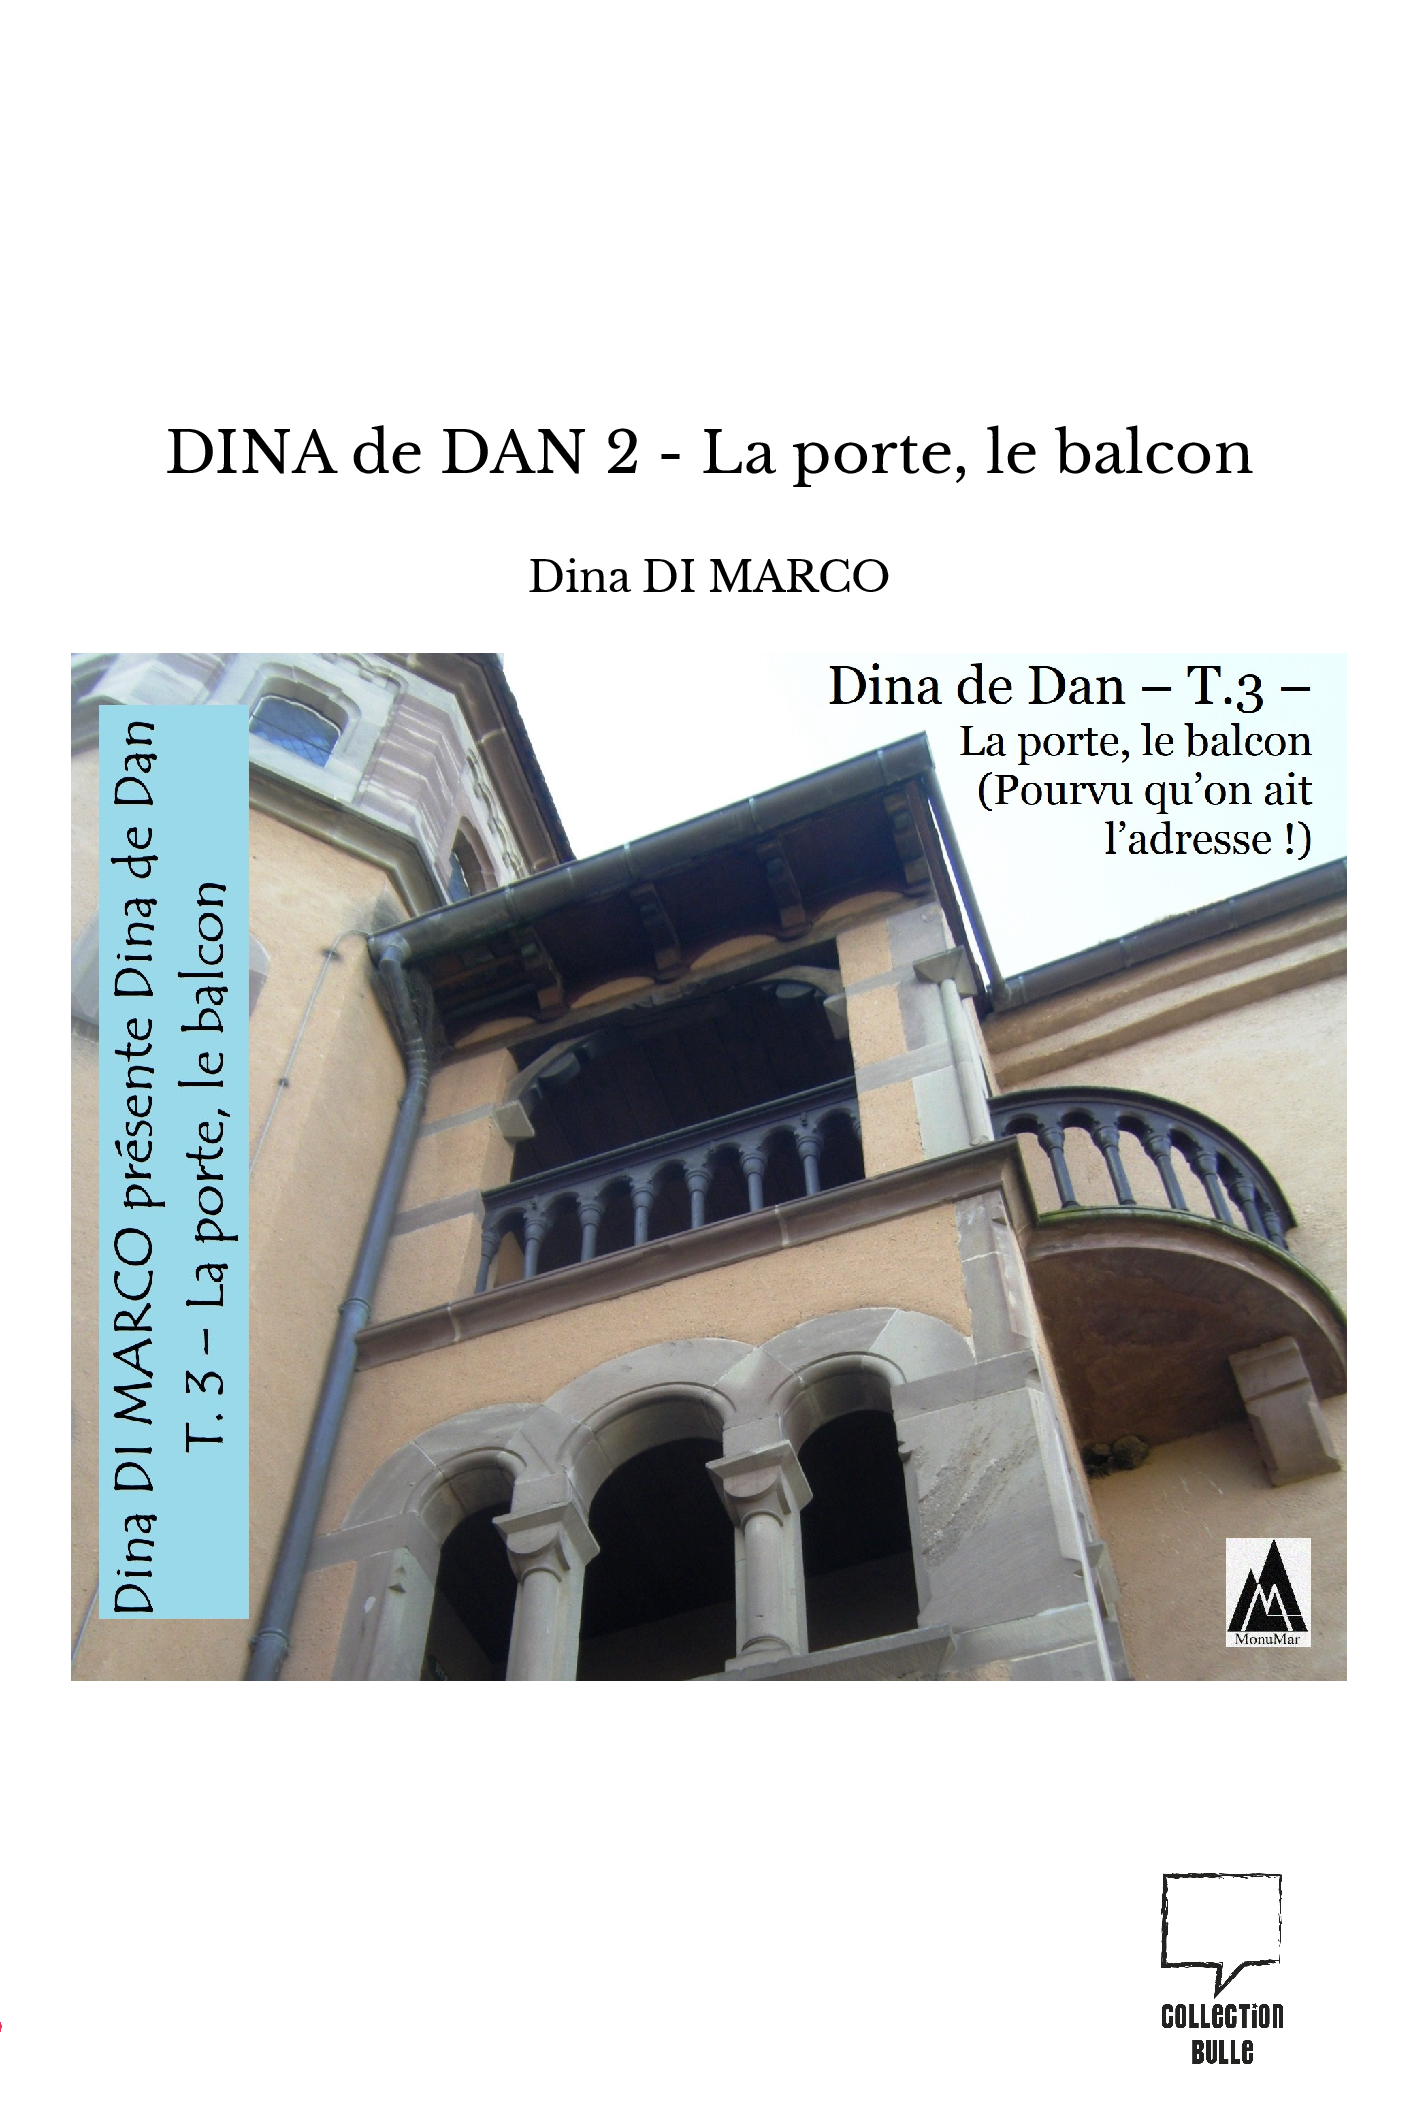 DINA de DAN 2 - La porte, le balcon